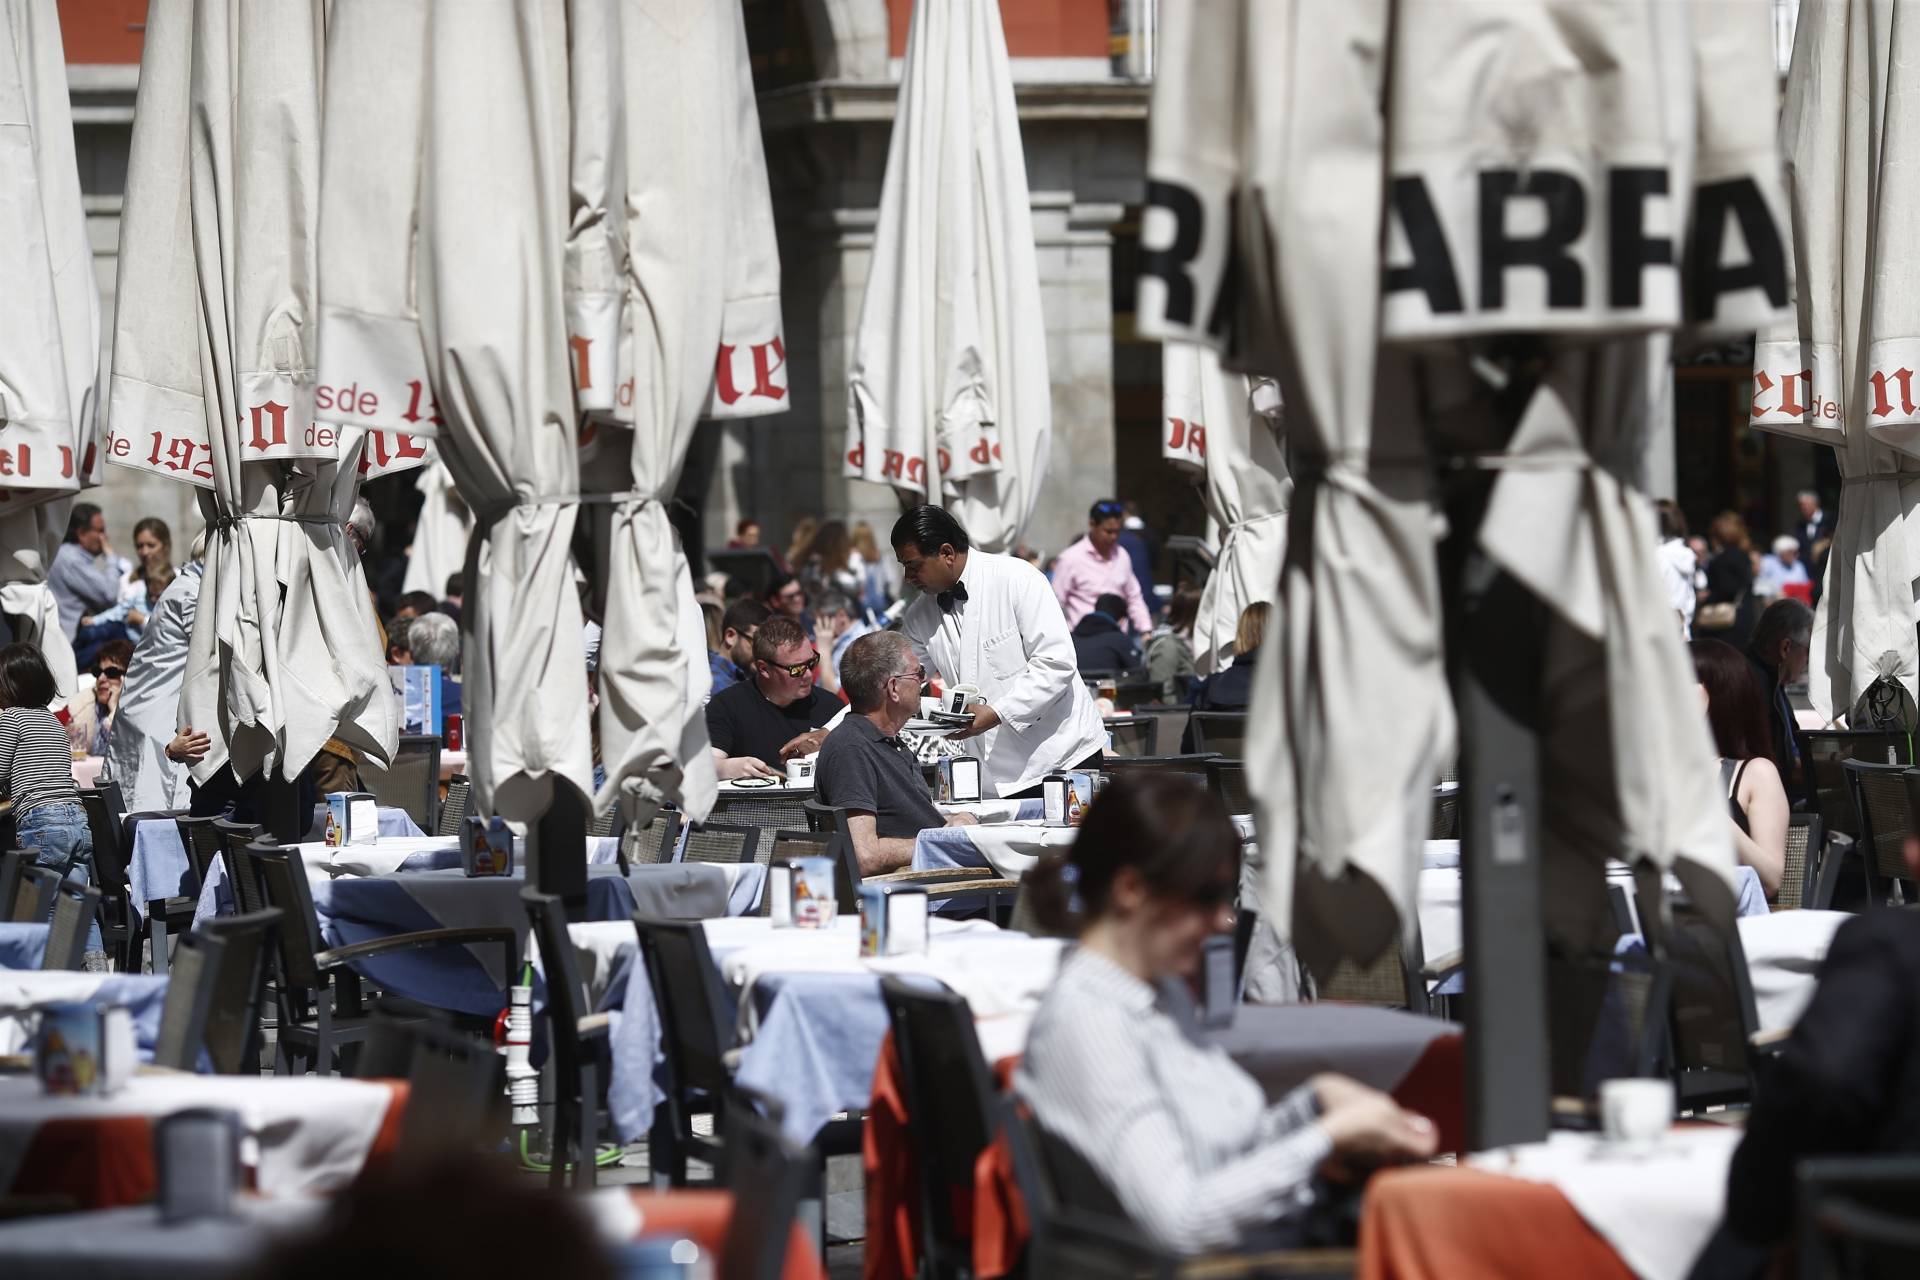 El ladrillo y la hostelería generan una de cada tres nuevas empresas en España